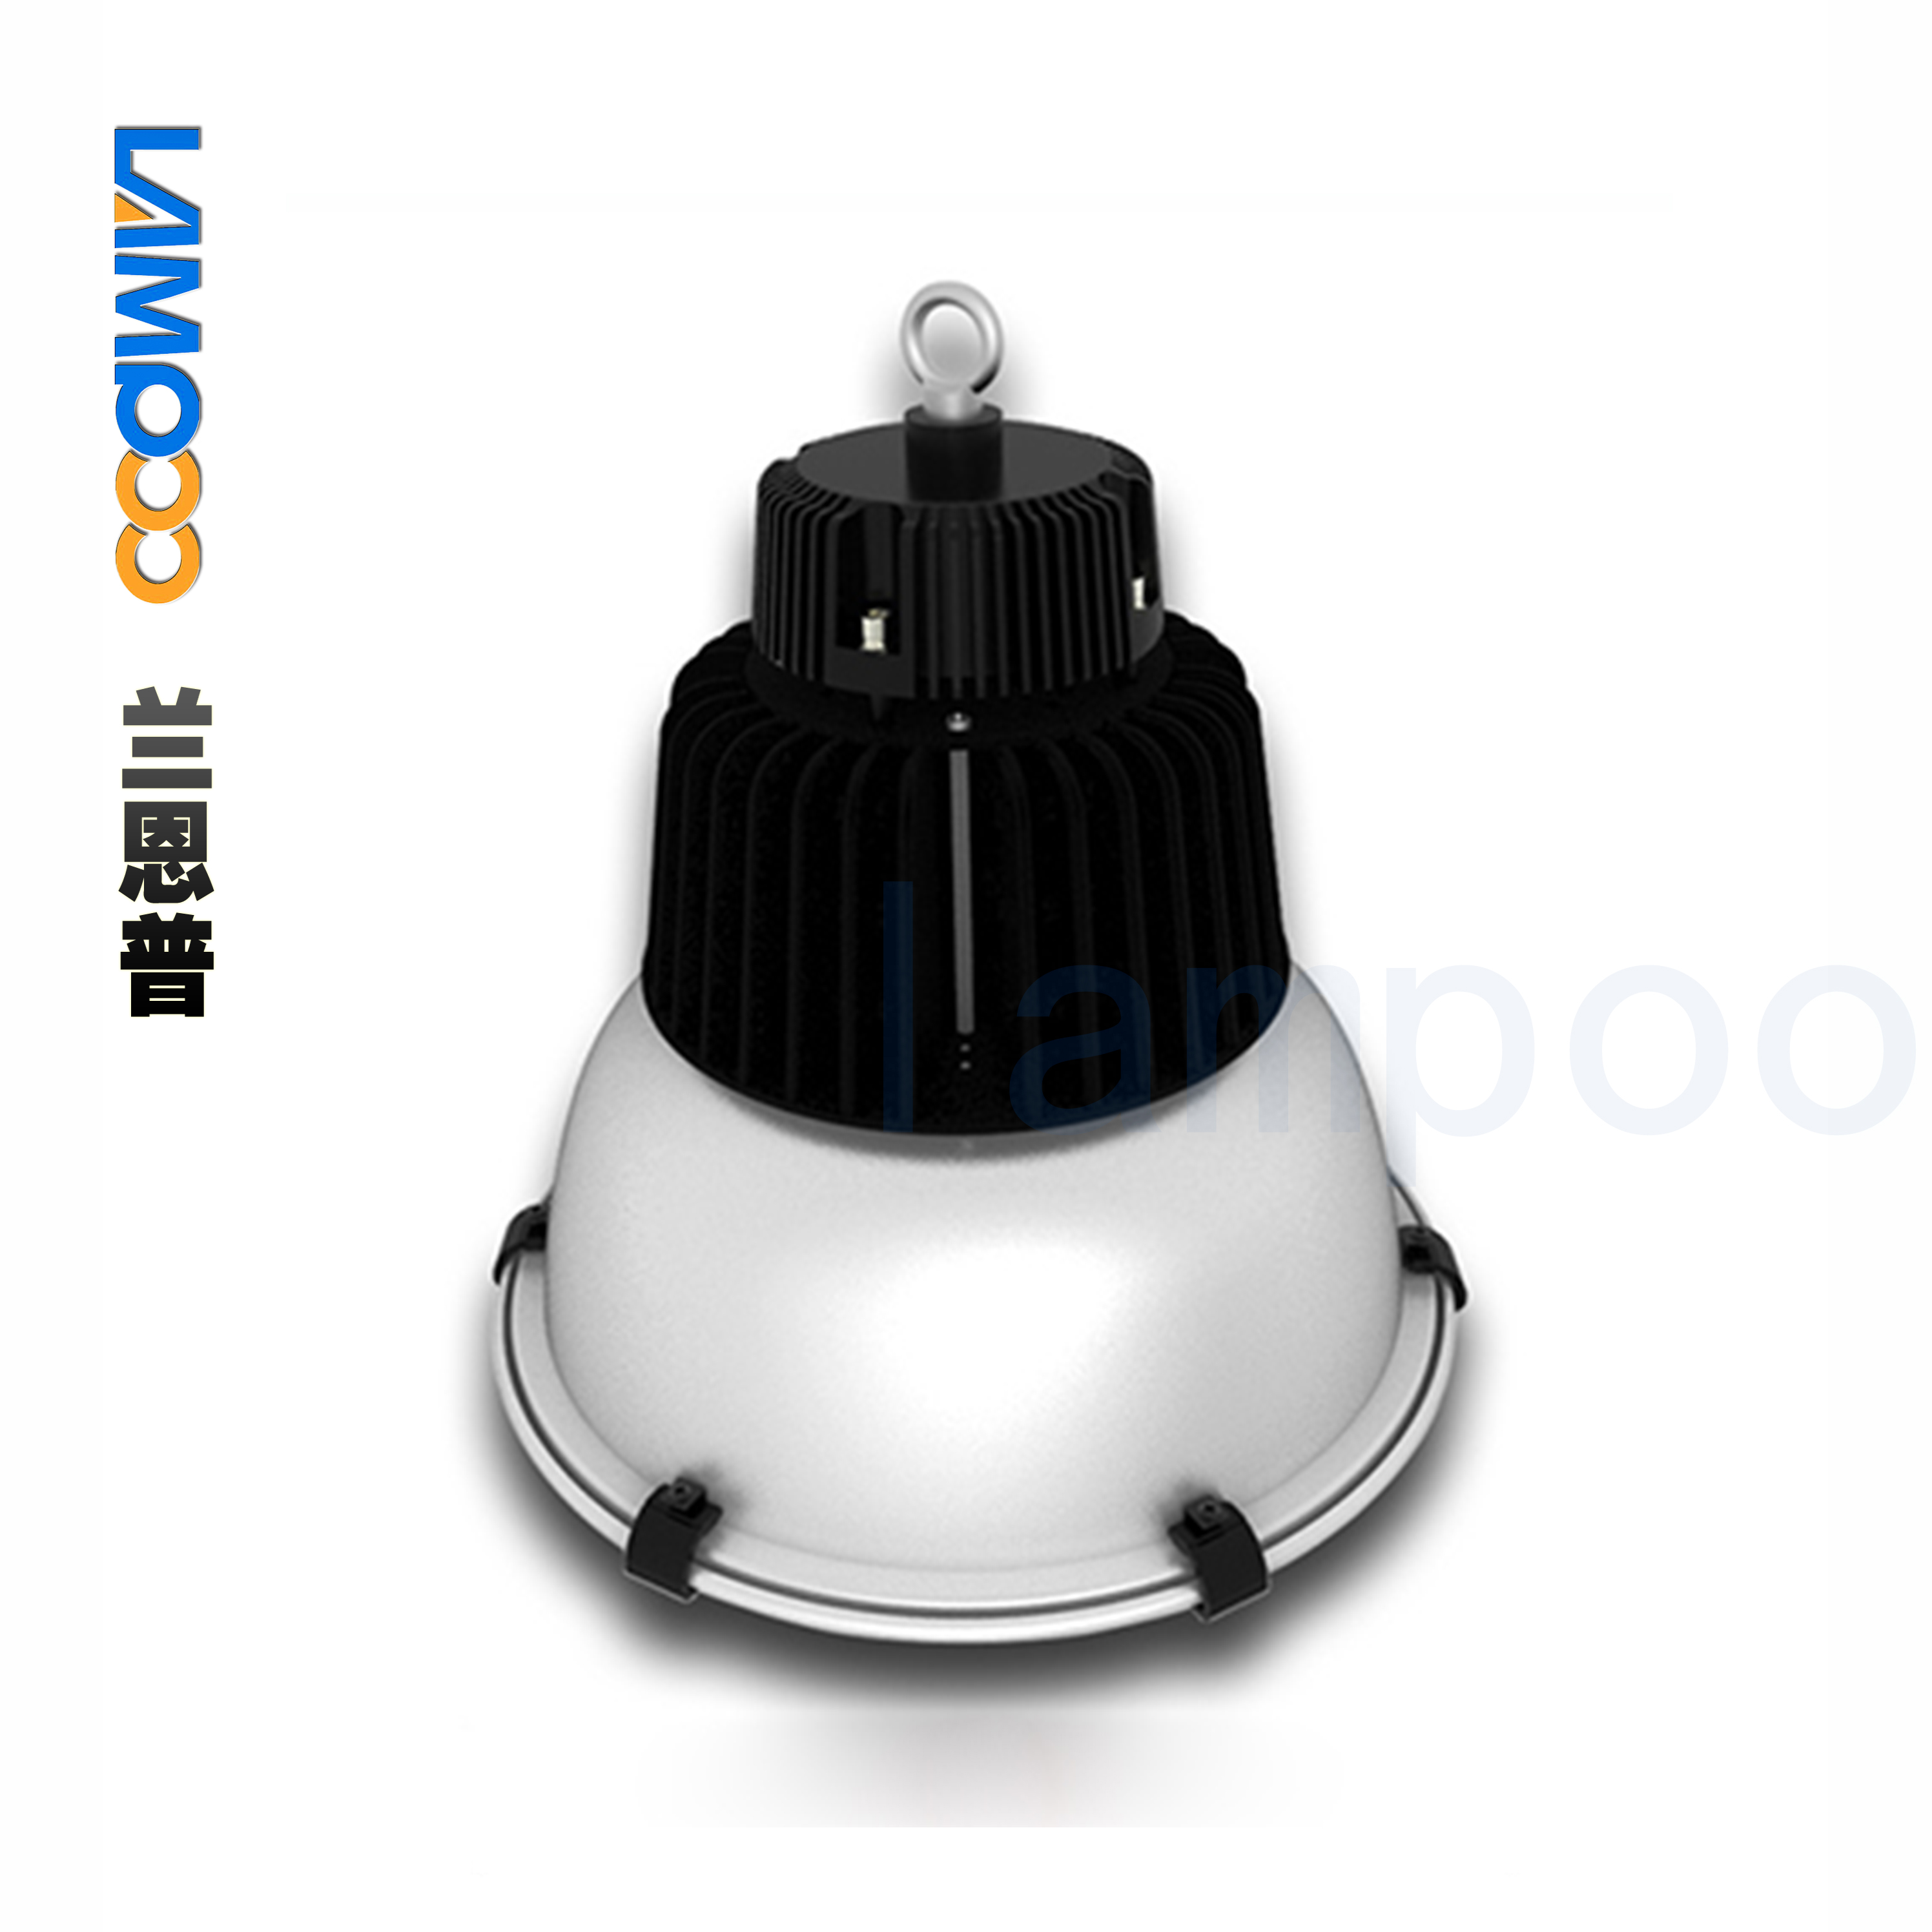 广东LED工矿灯厂家生产供应直销 东莞工矿灯生产批发 LED灯厂家